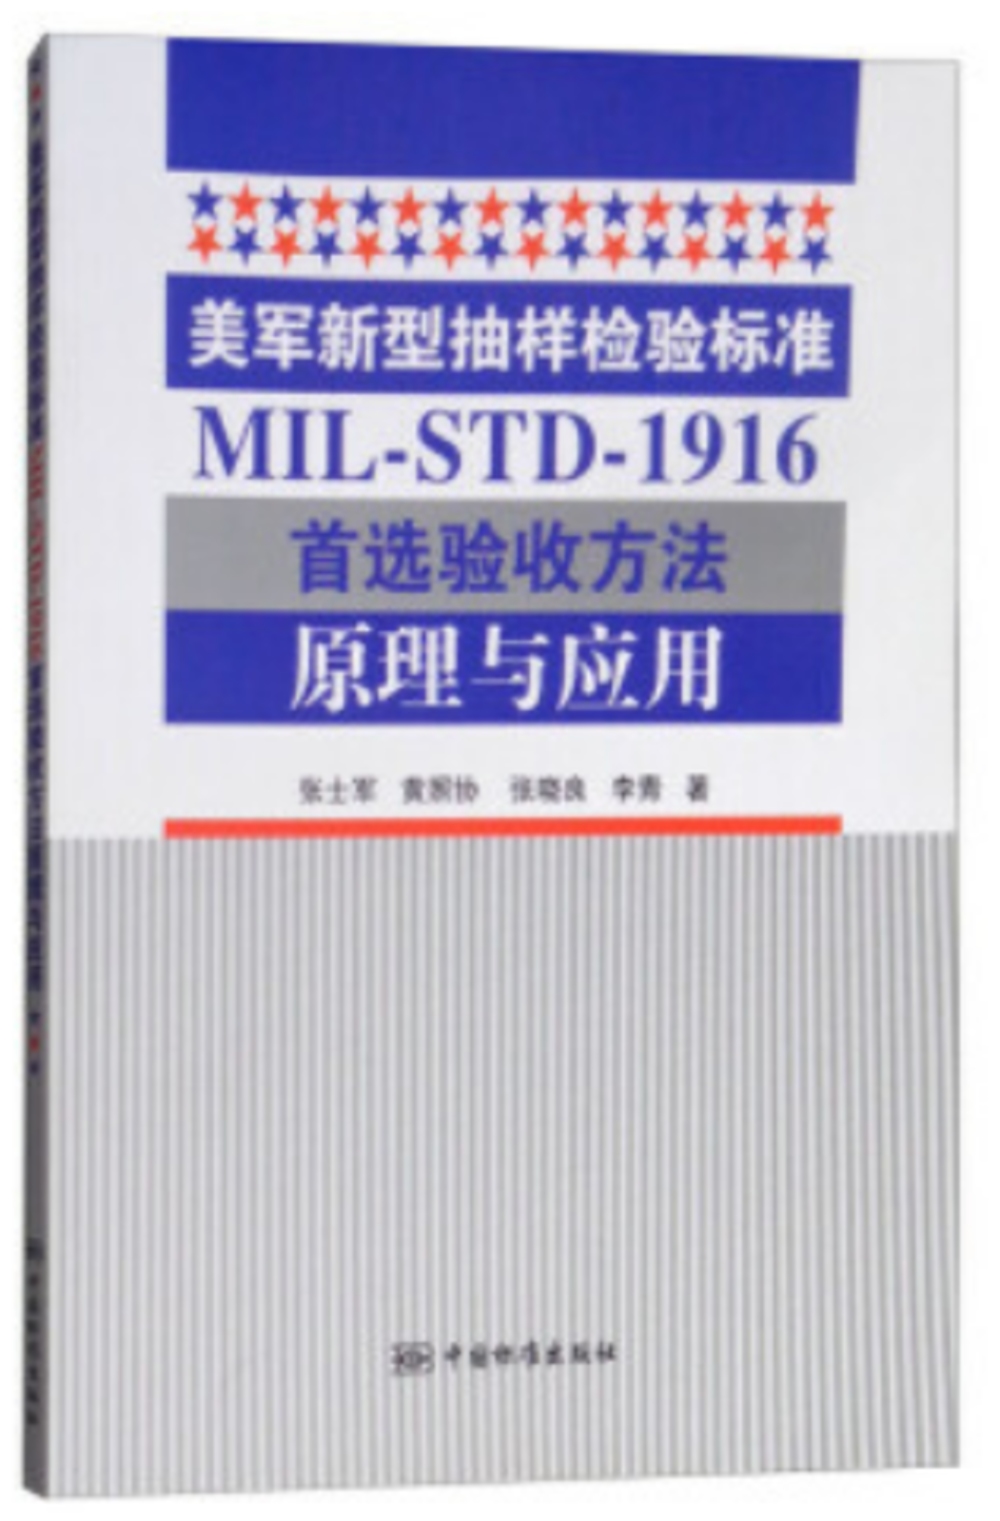 美軍新型抽樣檢驗標準MIL-STD-1916首選驗收方法原理與應用